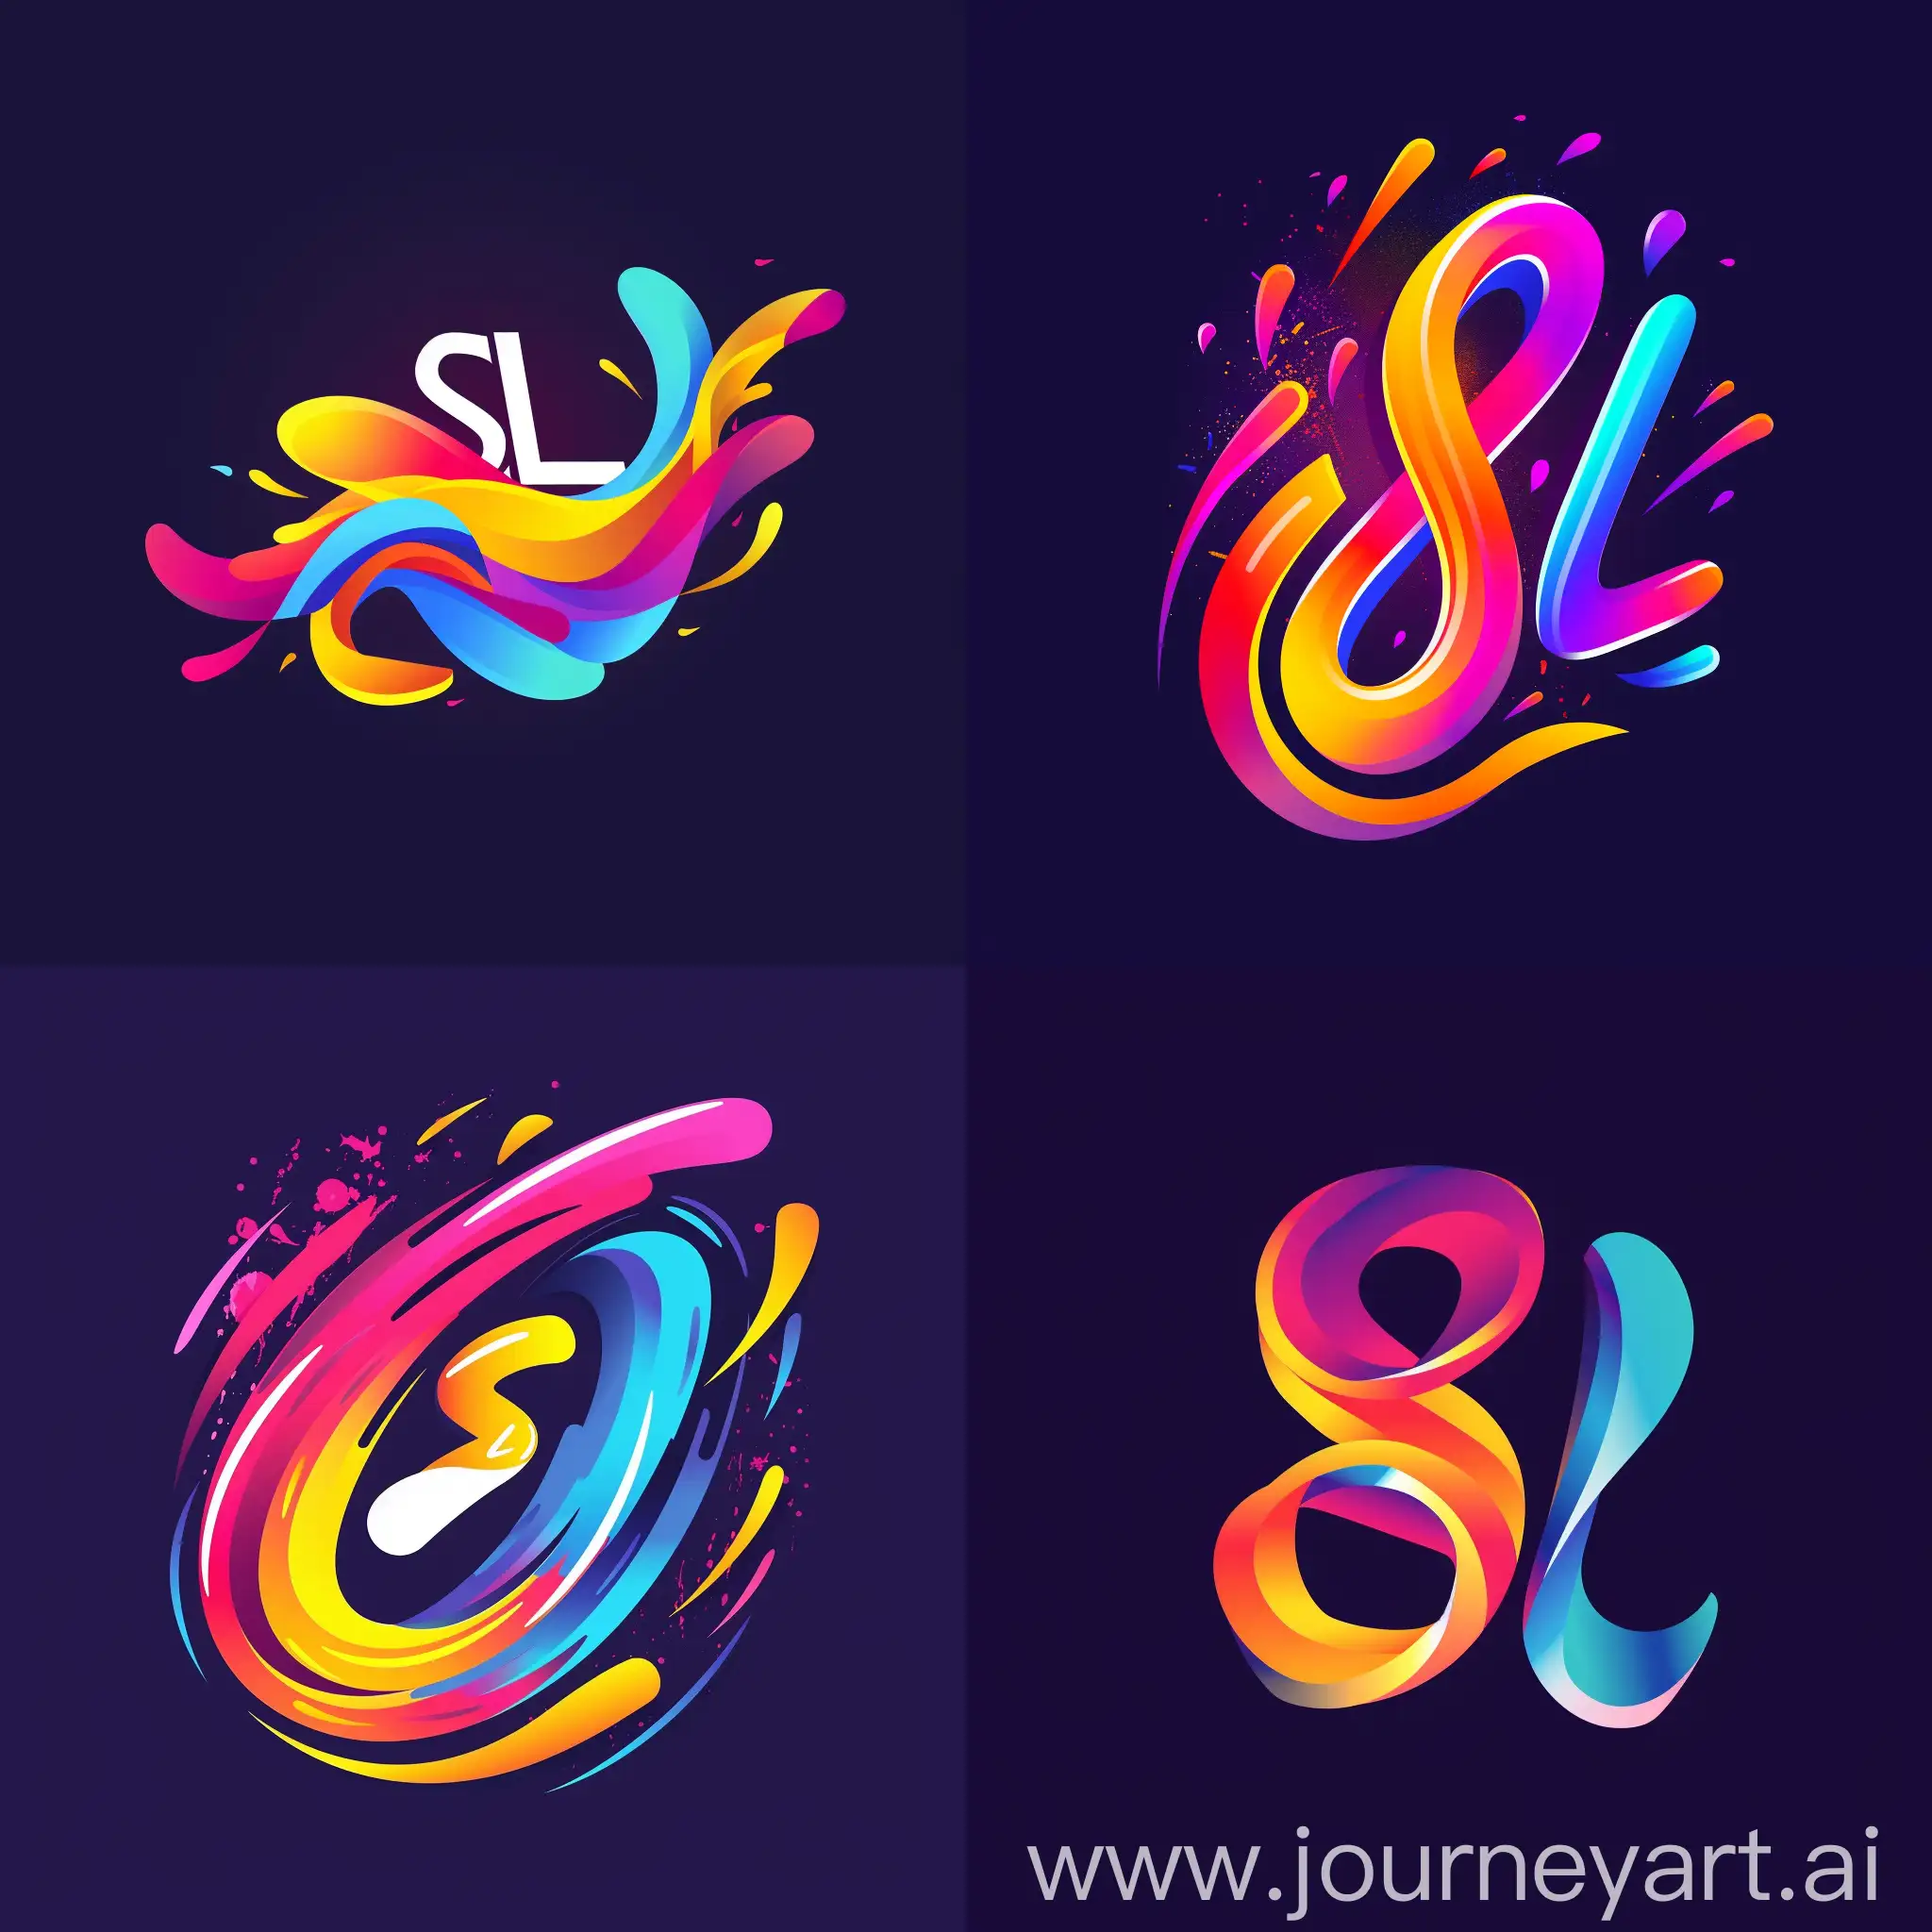 Эмоциональный и яркий логотип "SL", с яркими цветами и абстрактными формами, вызывающий чувство адреналина и азарта у зрителей и участников